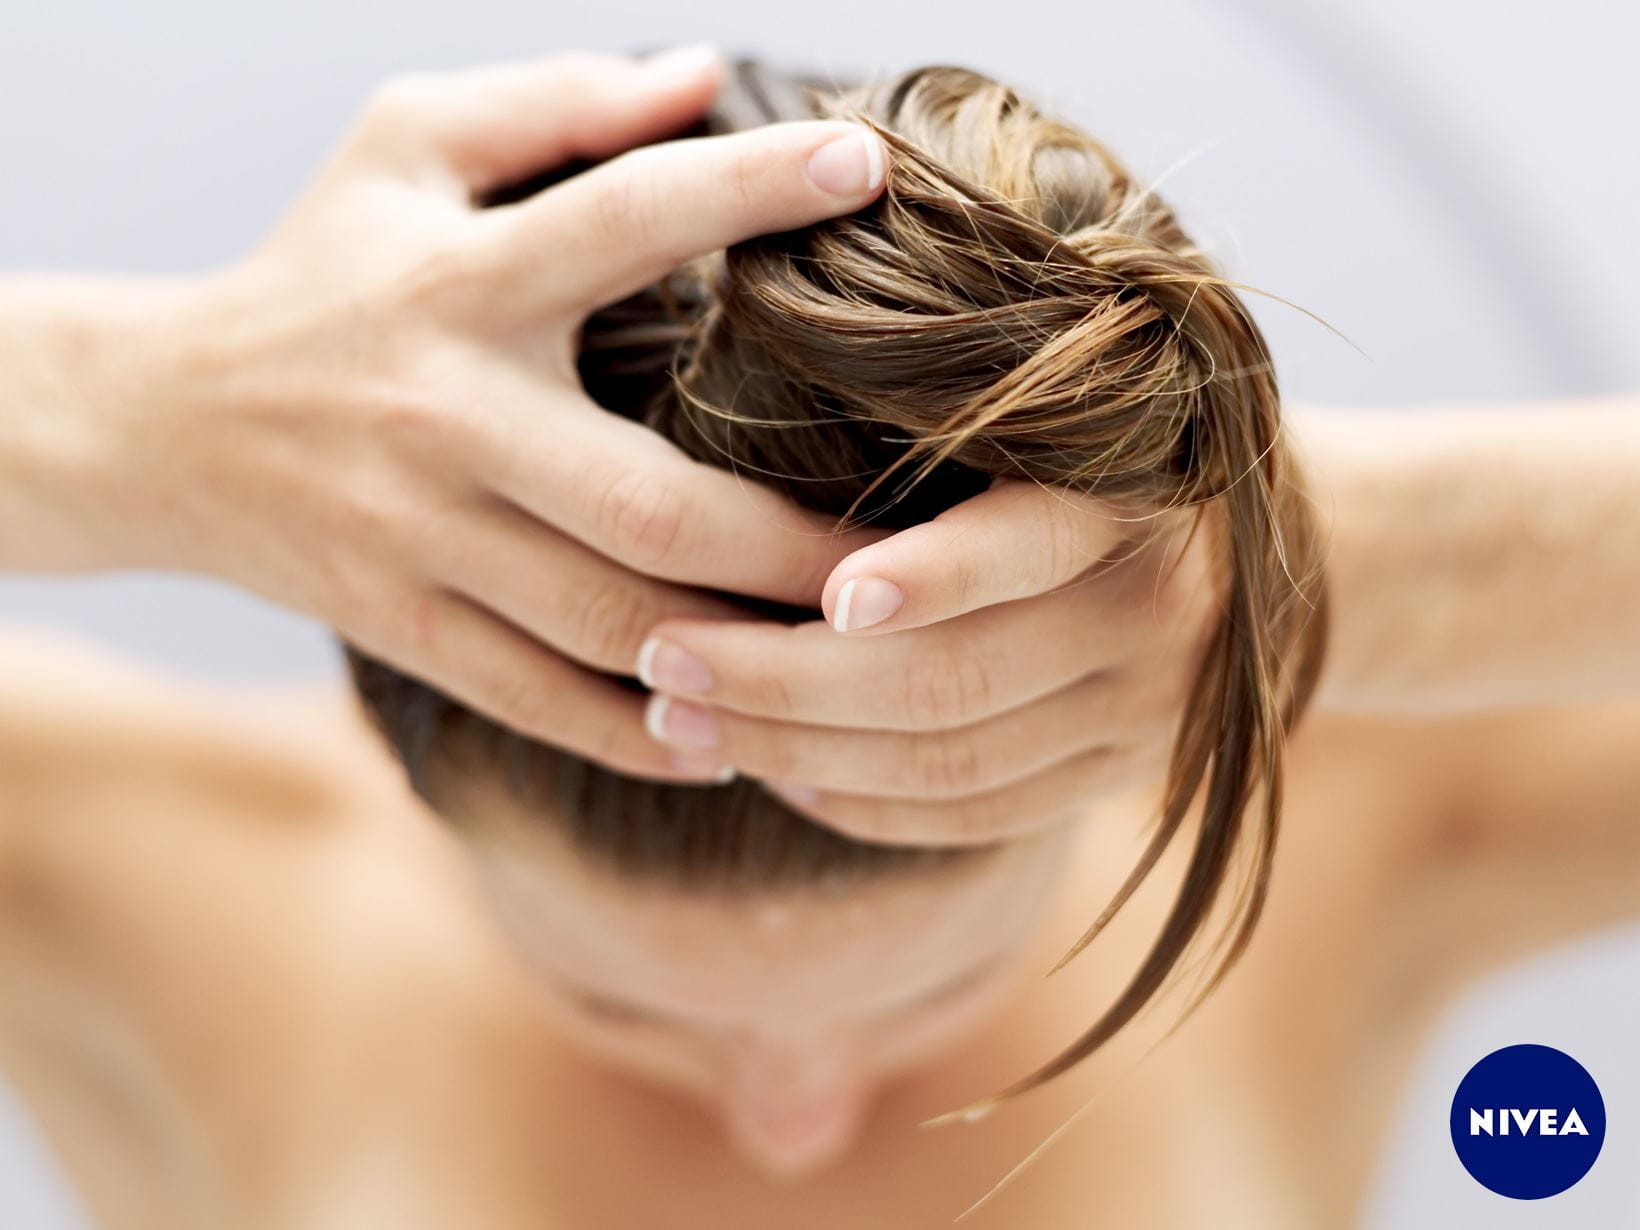 Bestes Shampoo: Kann ich meine Haare auch ohne Shampoo waschen?